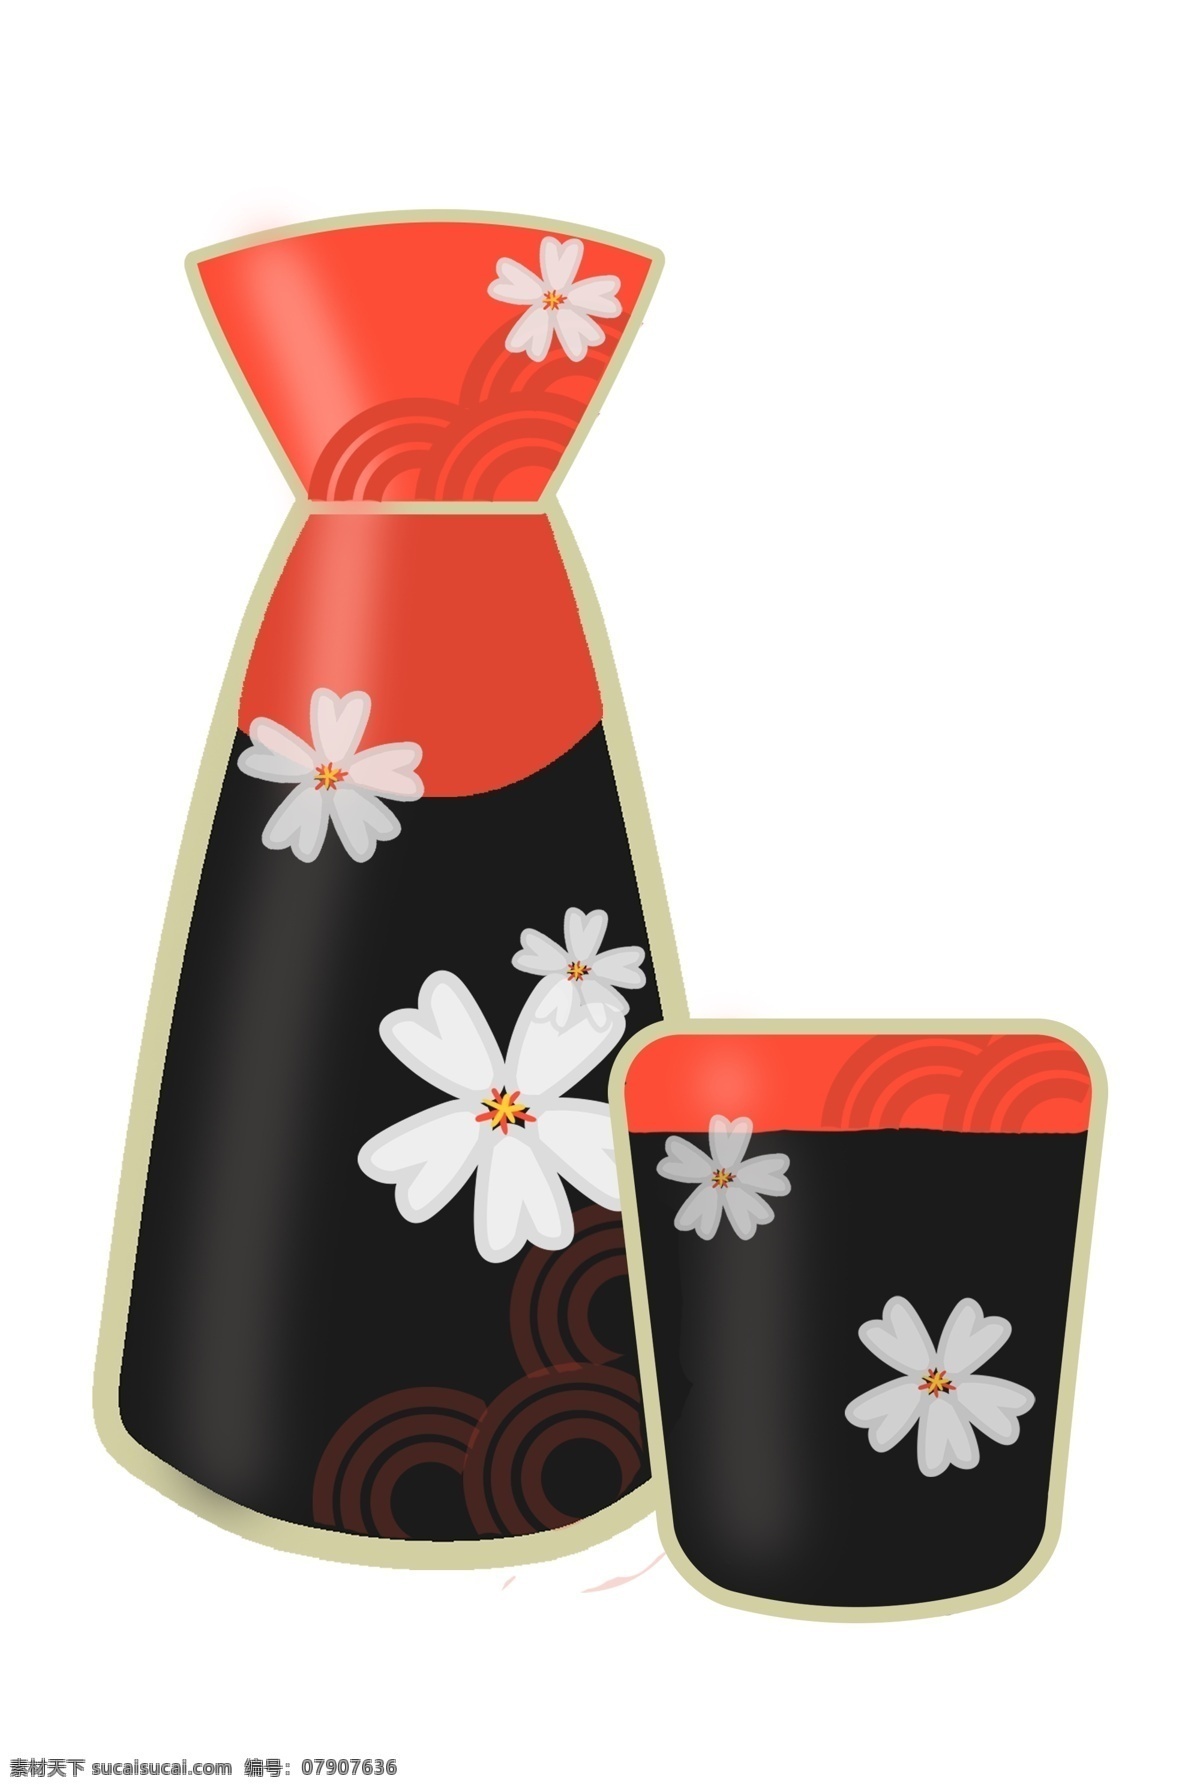 日本 酒文化 酒壶 插画 樱花酒壶酒杯 日式 日式酒壶 酒水 酒具 餐饮美食 餐具厨具